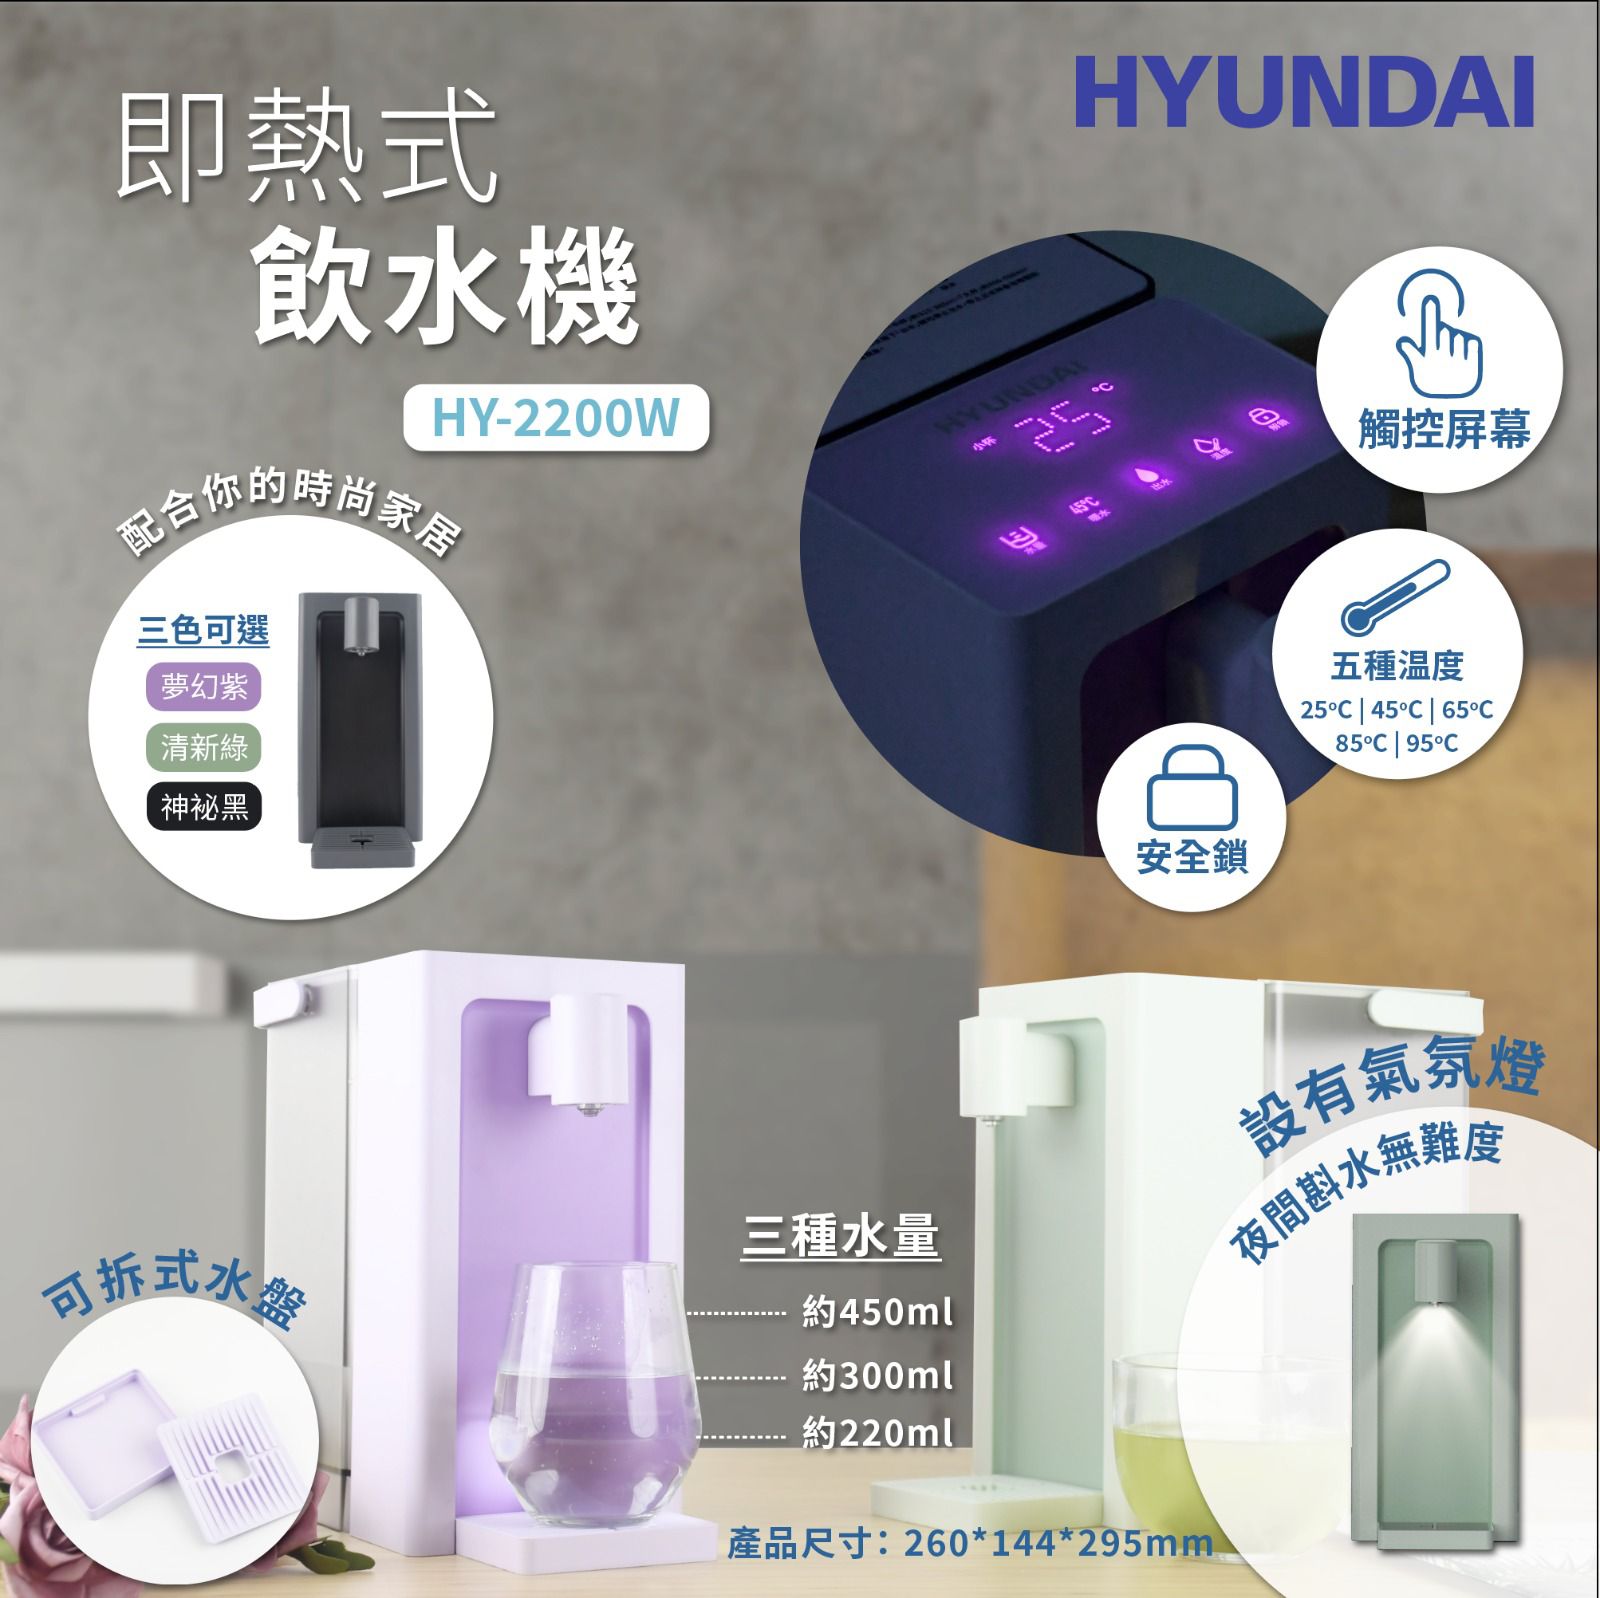 Hyundai 現代 HY - 2200W 即熱式飲水機 - Fever Electrics 電器熱網購平台